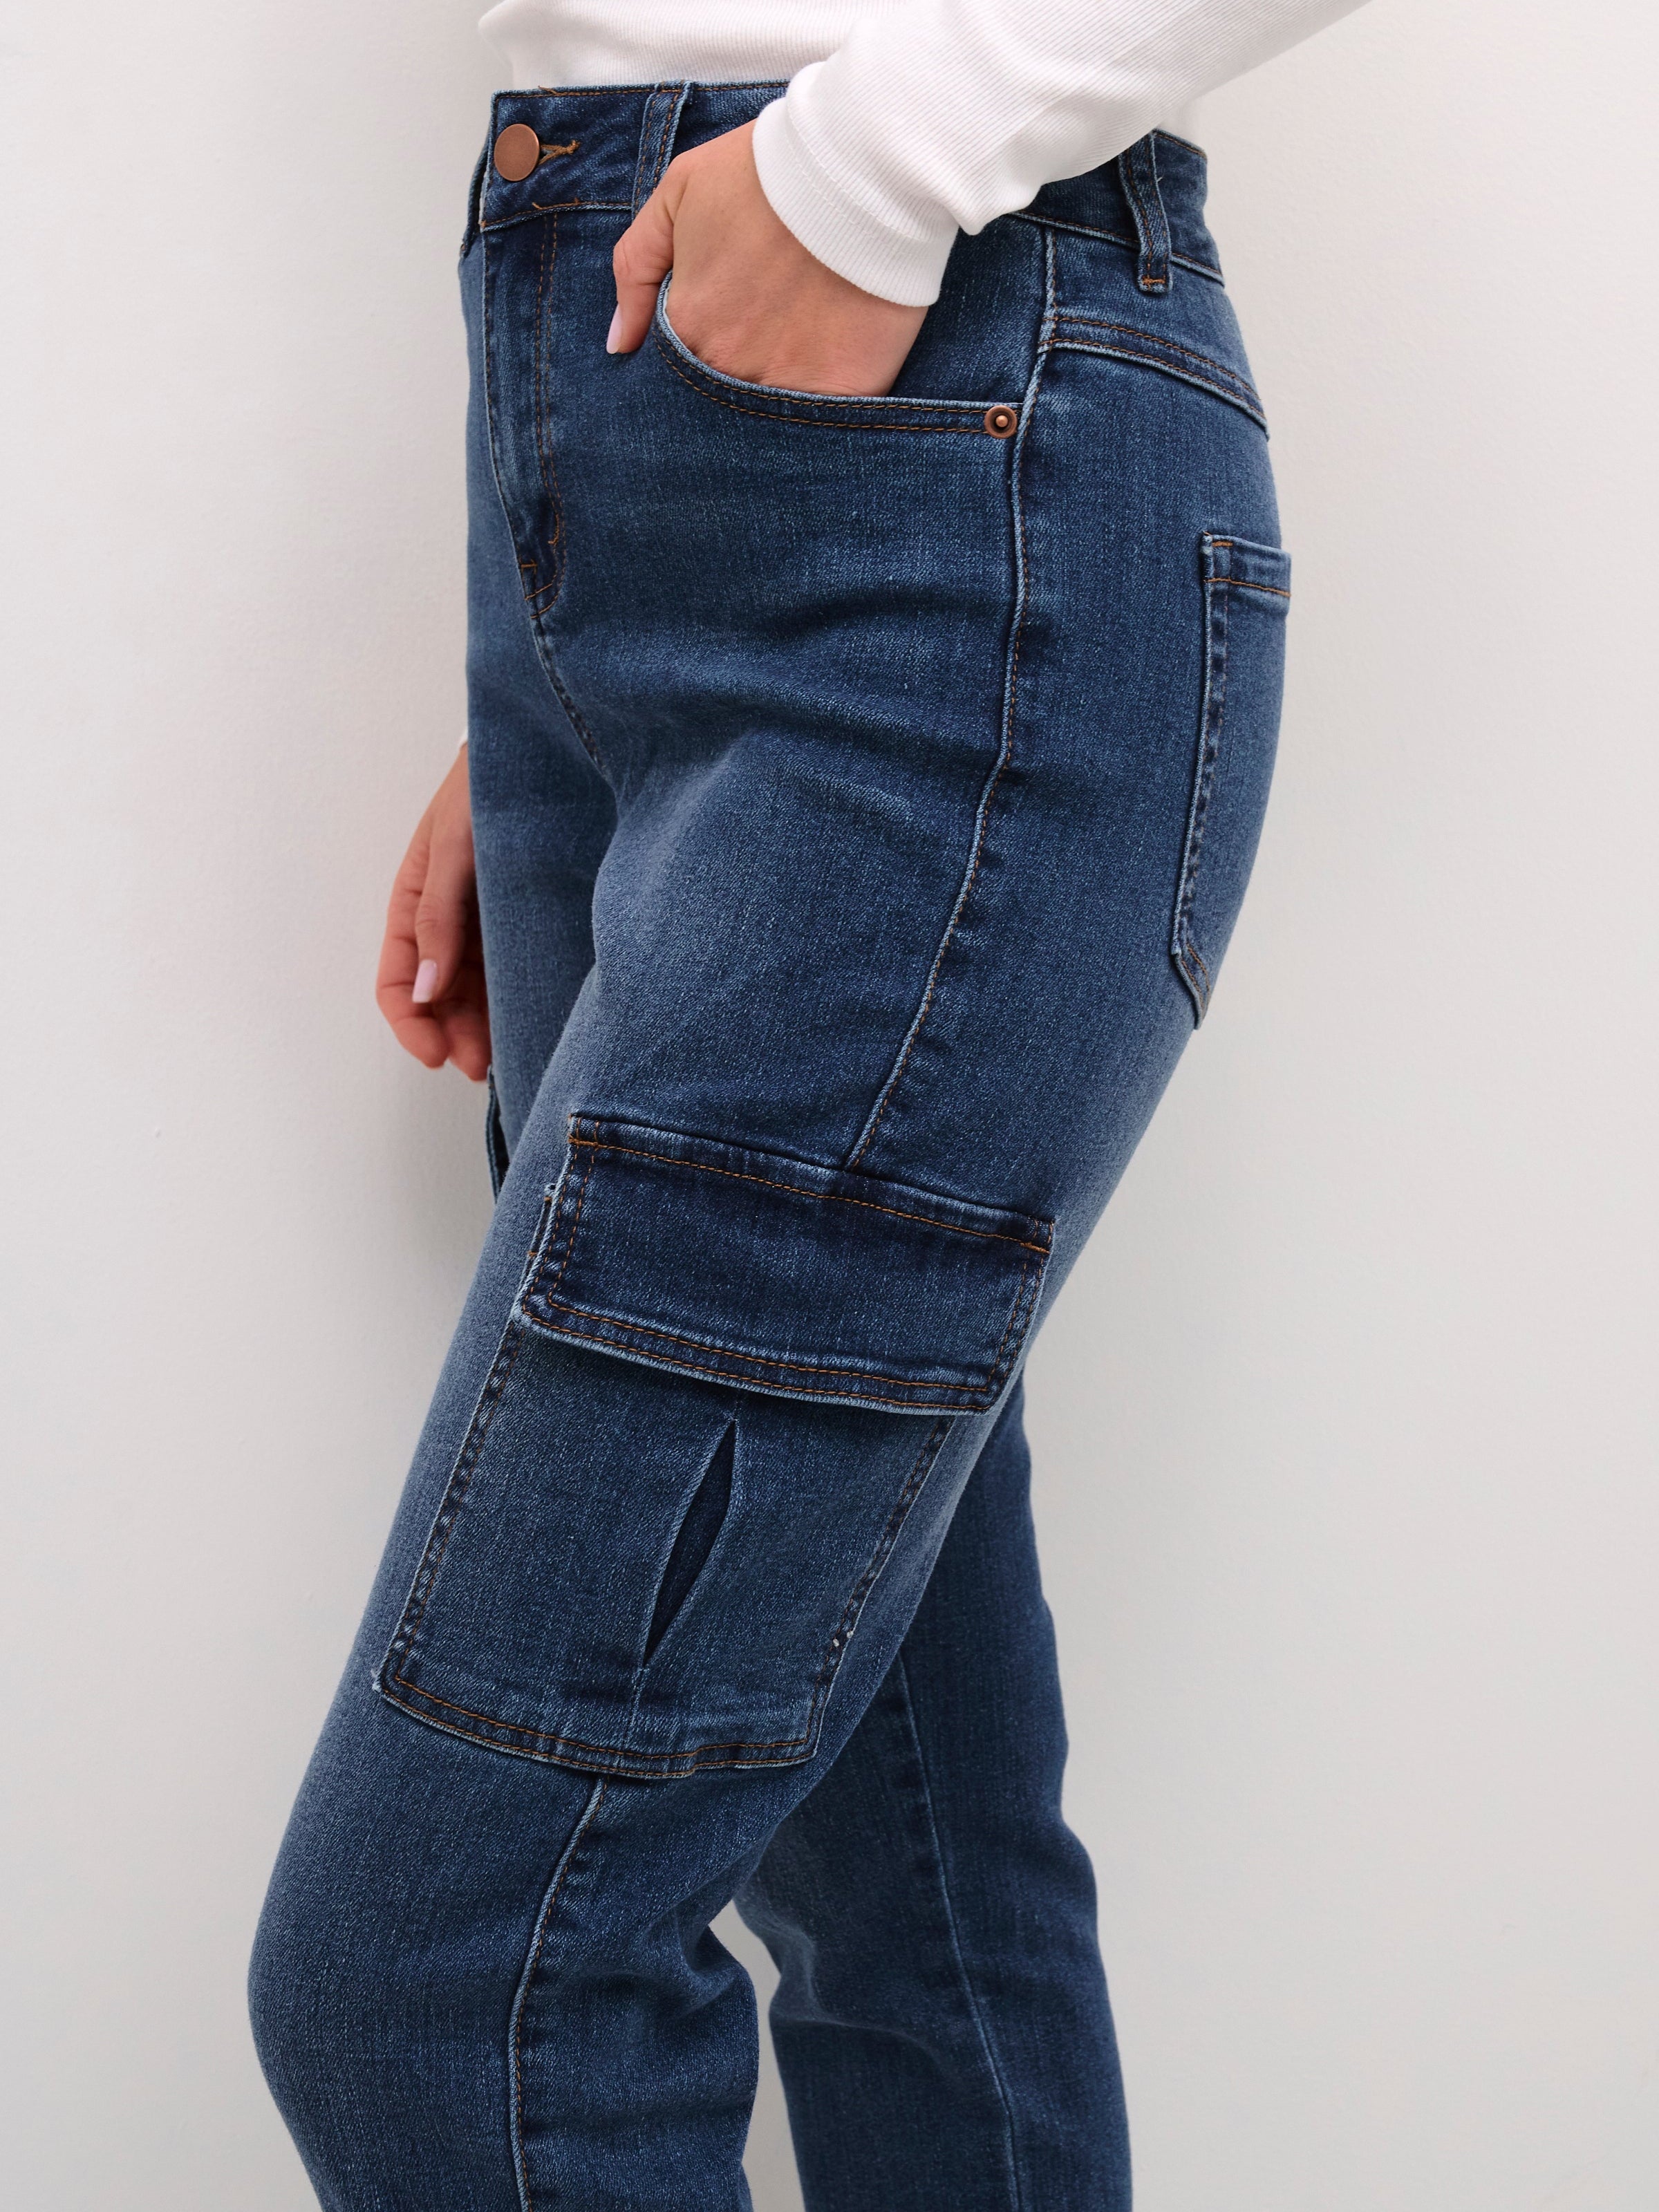 LEV UGE 13 Kaffe KAsinem cargo jeans 7/8 medium blue denim - Online-Mode